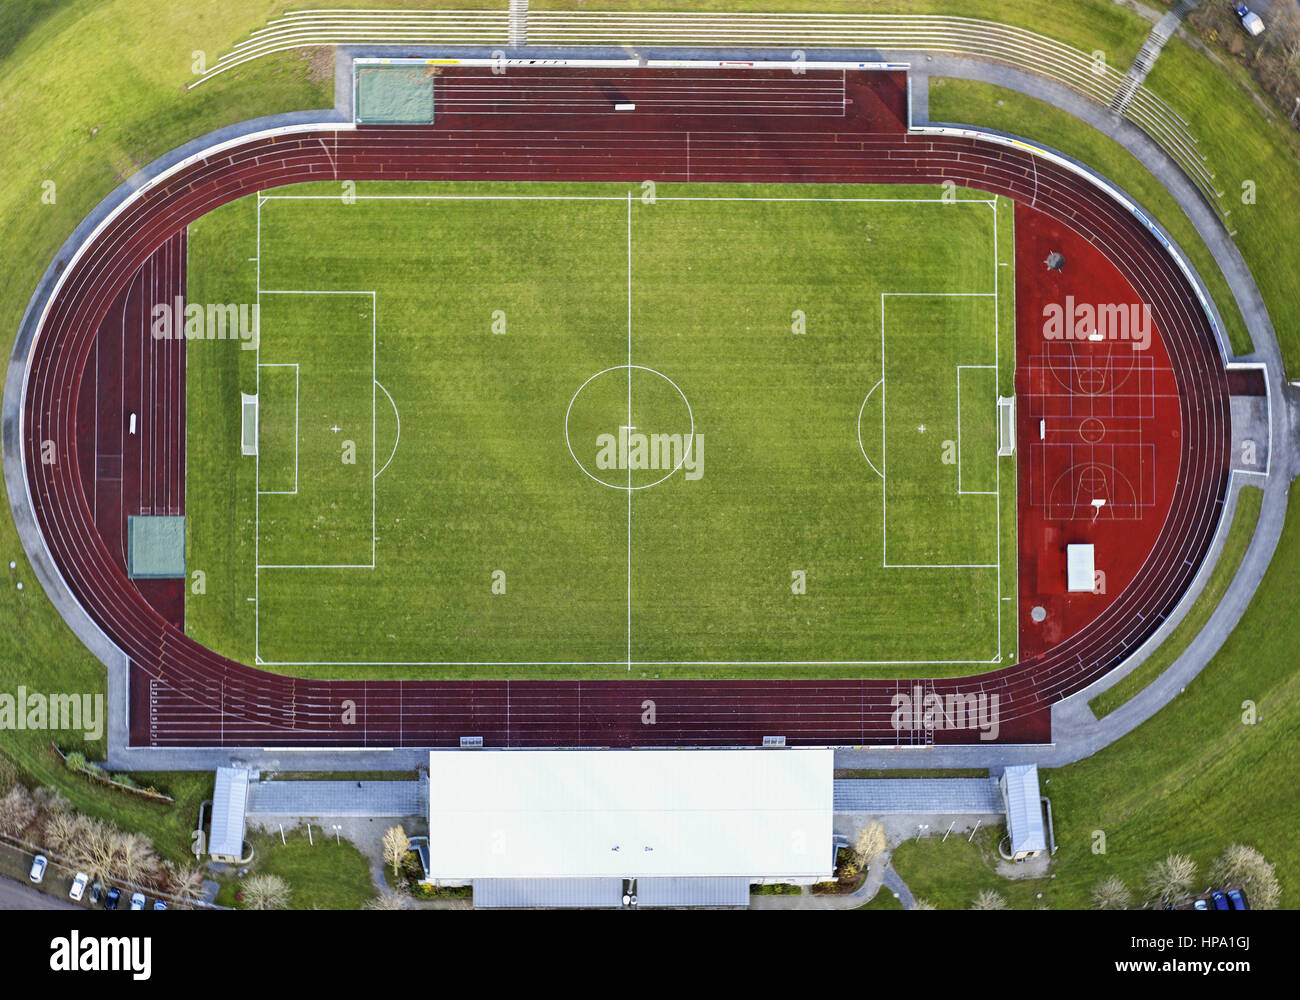 Fussballstadion, Illerstadion Kempten, Luftaufnahme Stock Photo